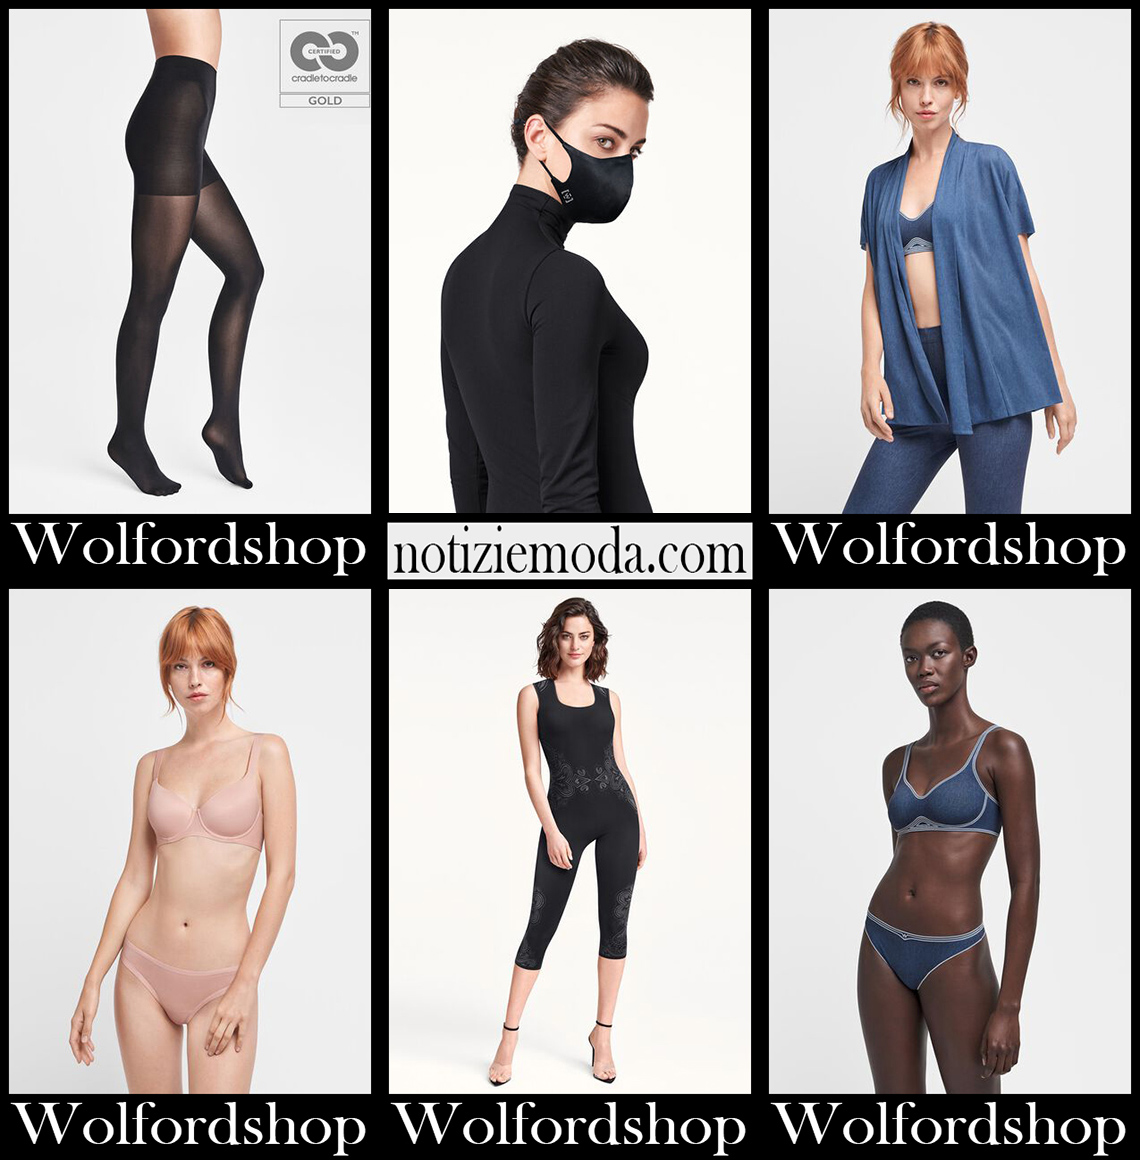 Intimo Wolfordshop 2020 21 abbigliamento donna